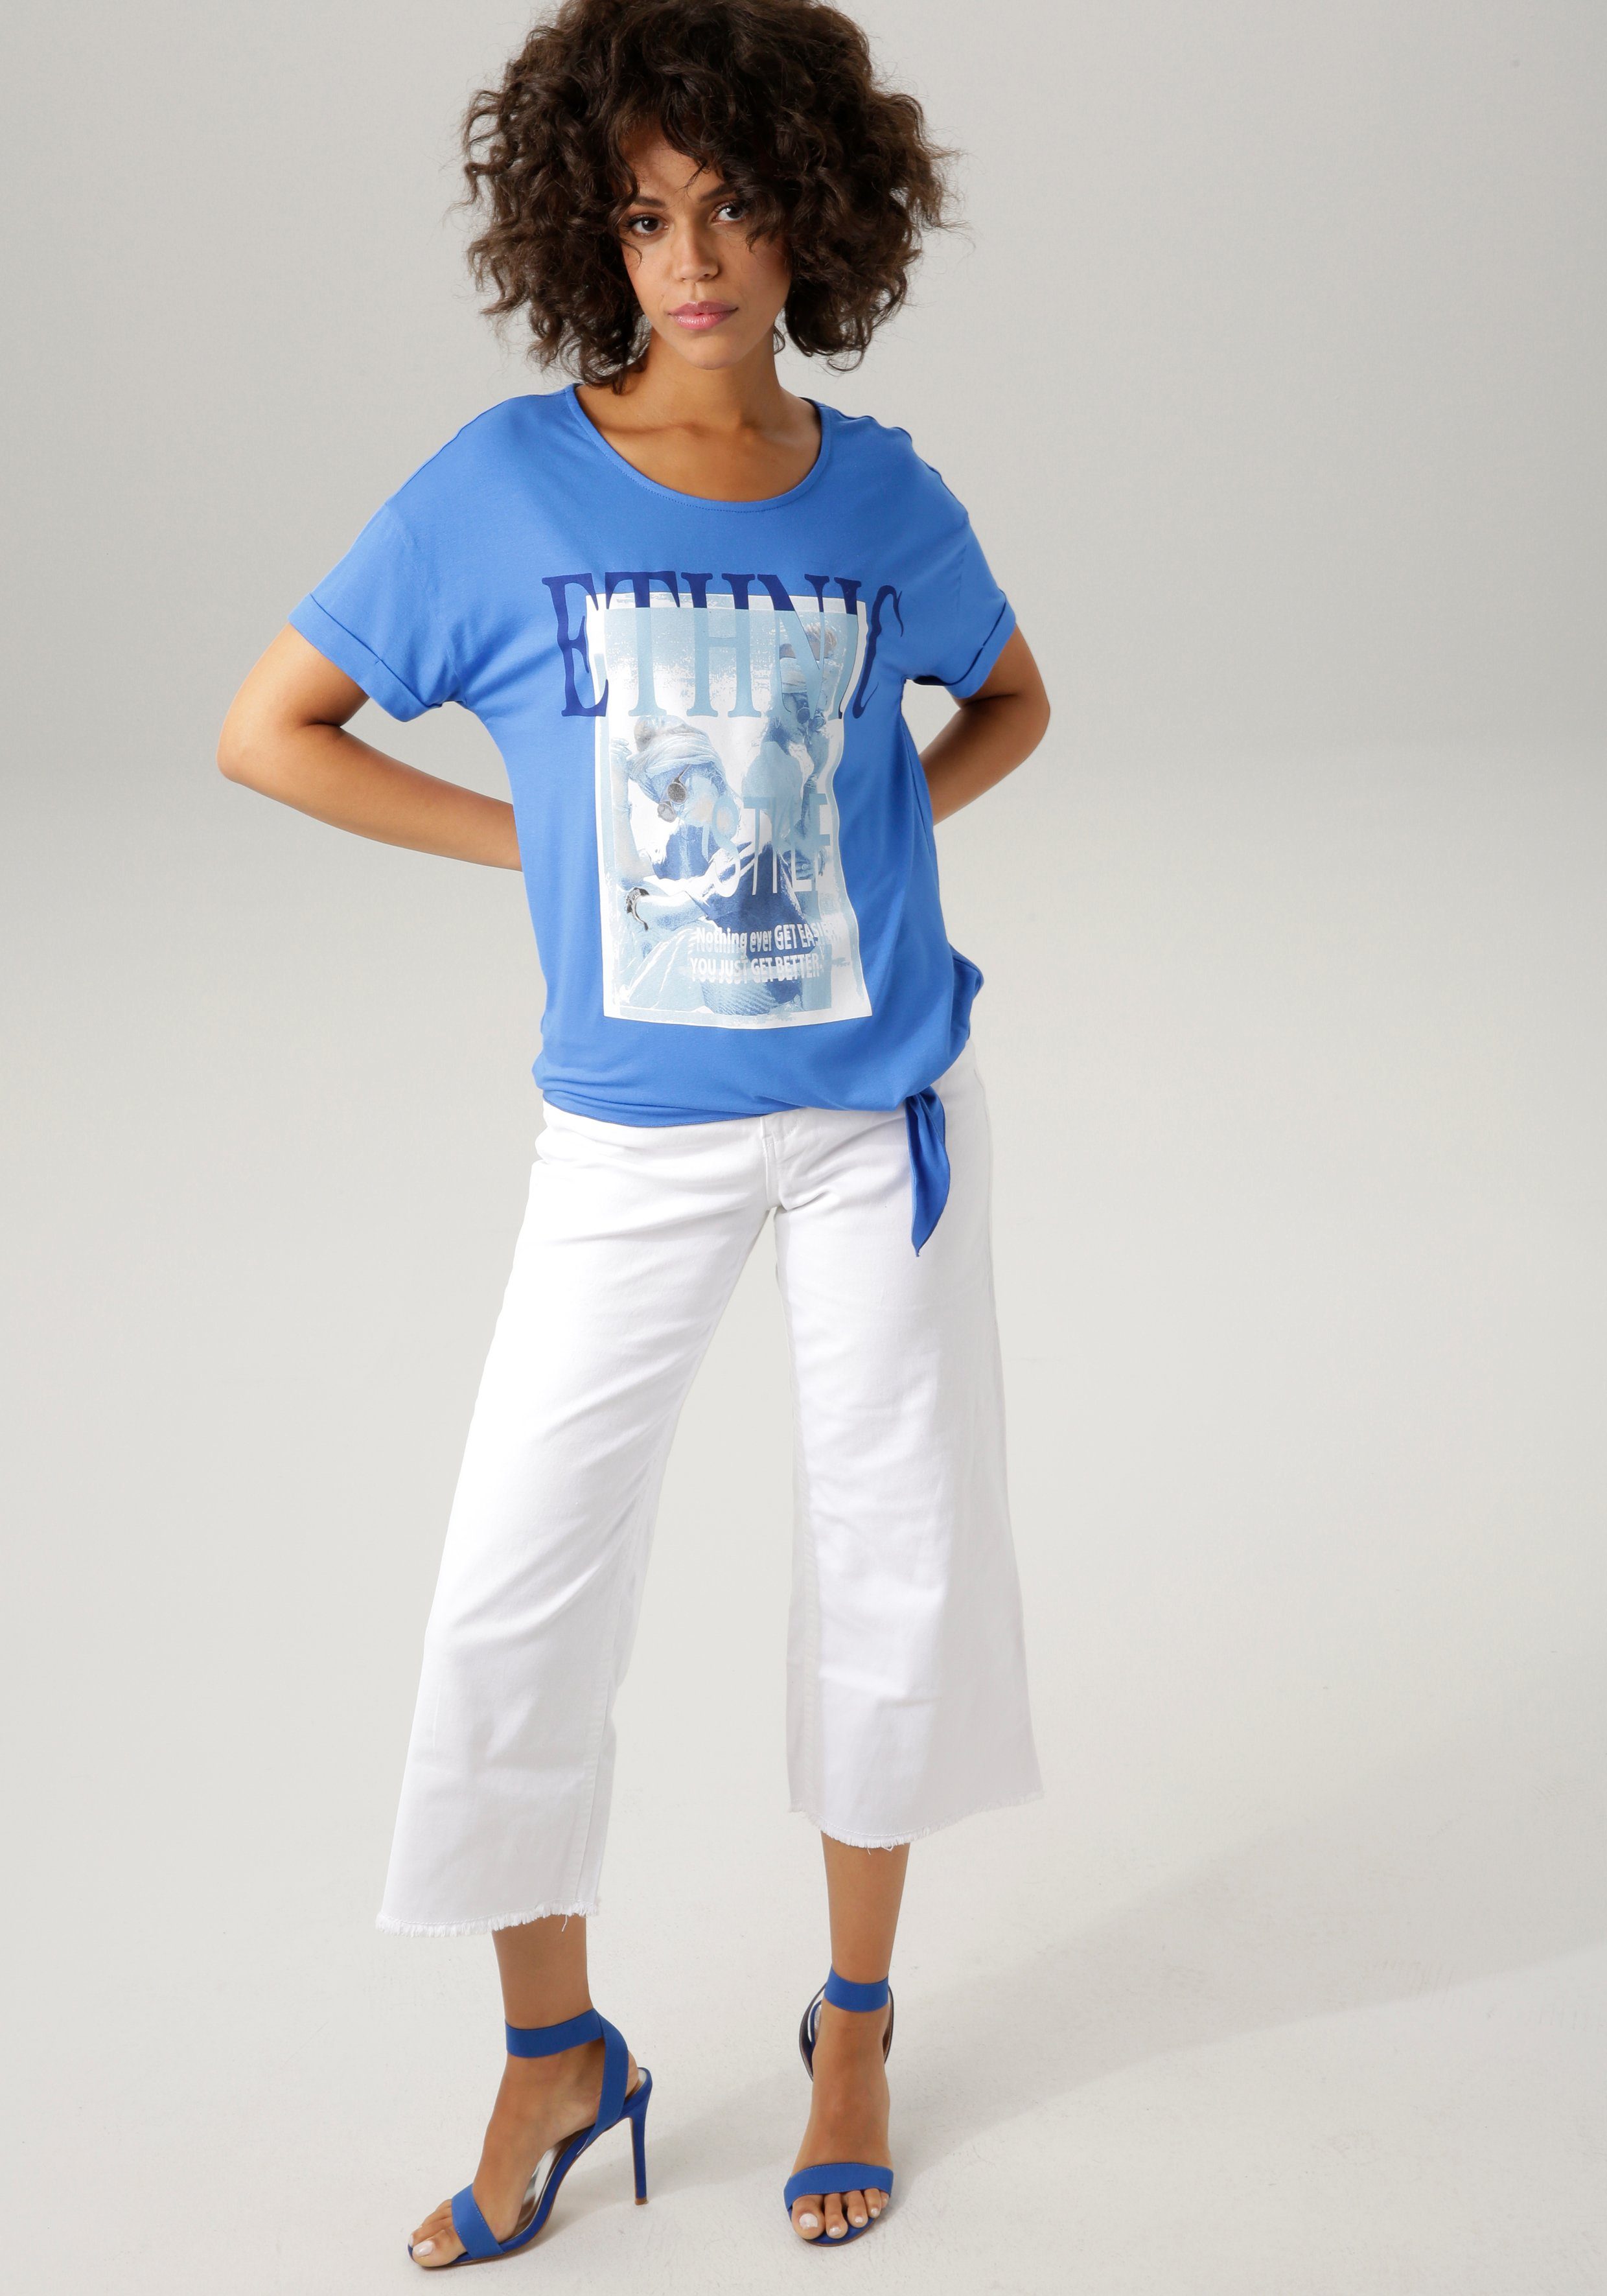 T-Shirt "ethnischem" mit royalblau-marine-wollweiß-hellpetrol-sand-schwarz Frontdruck CASUAL Aniston ausdrucksstarkem